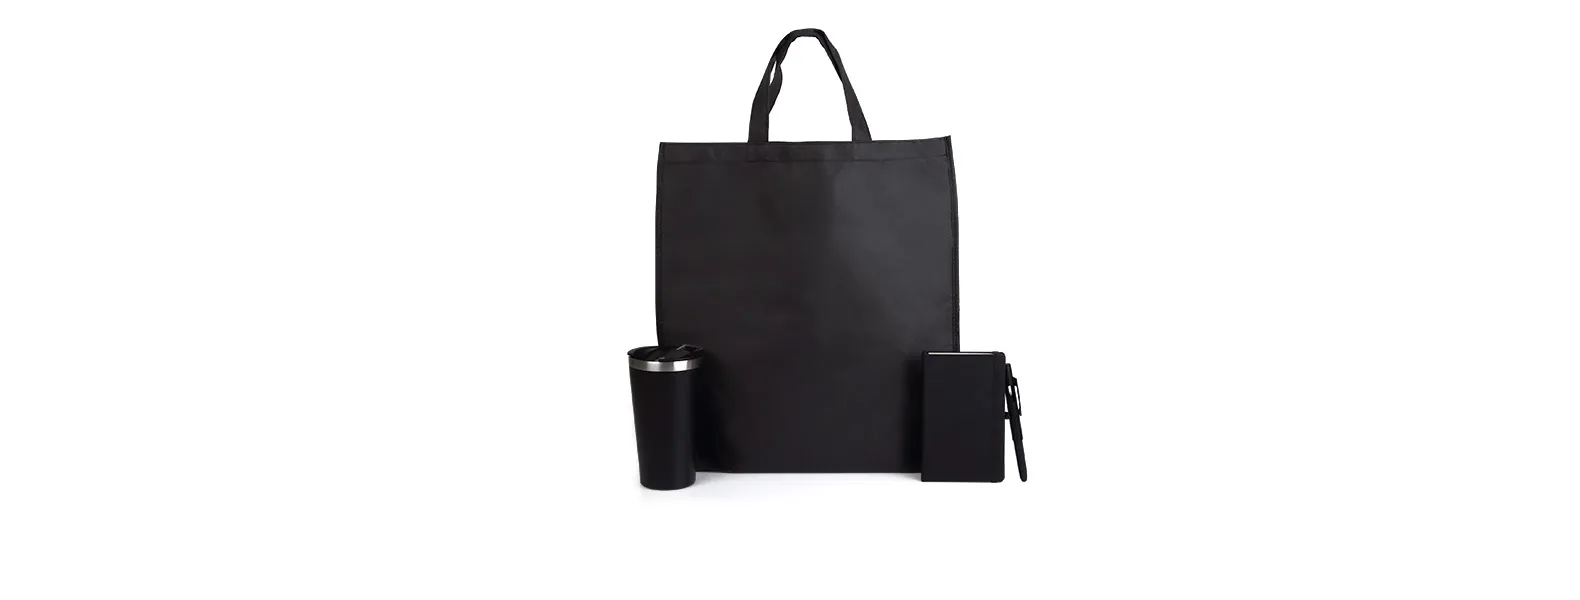 Conta com sacola preta em TNT com alças; copo térmico com tampa e abridor de garrafa; caderno para anotações preto com capa dura e caneta esferográfica em ABS preta.